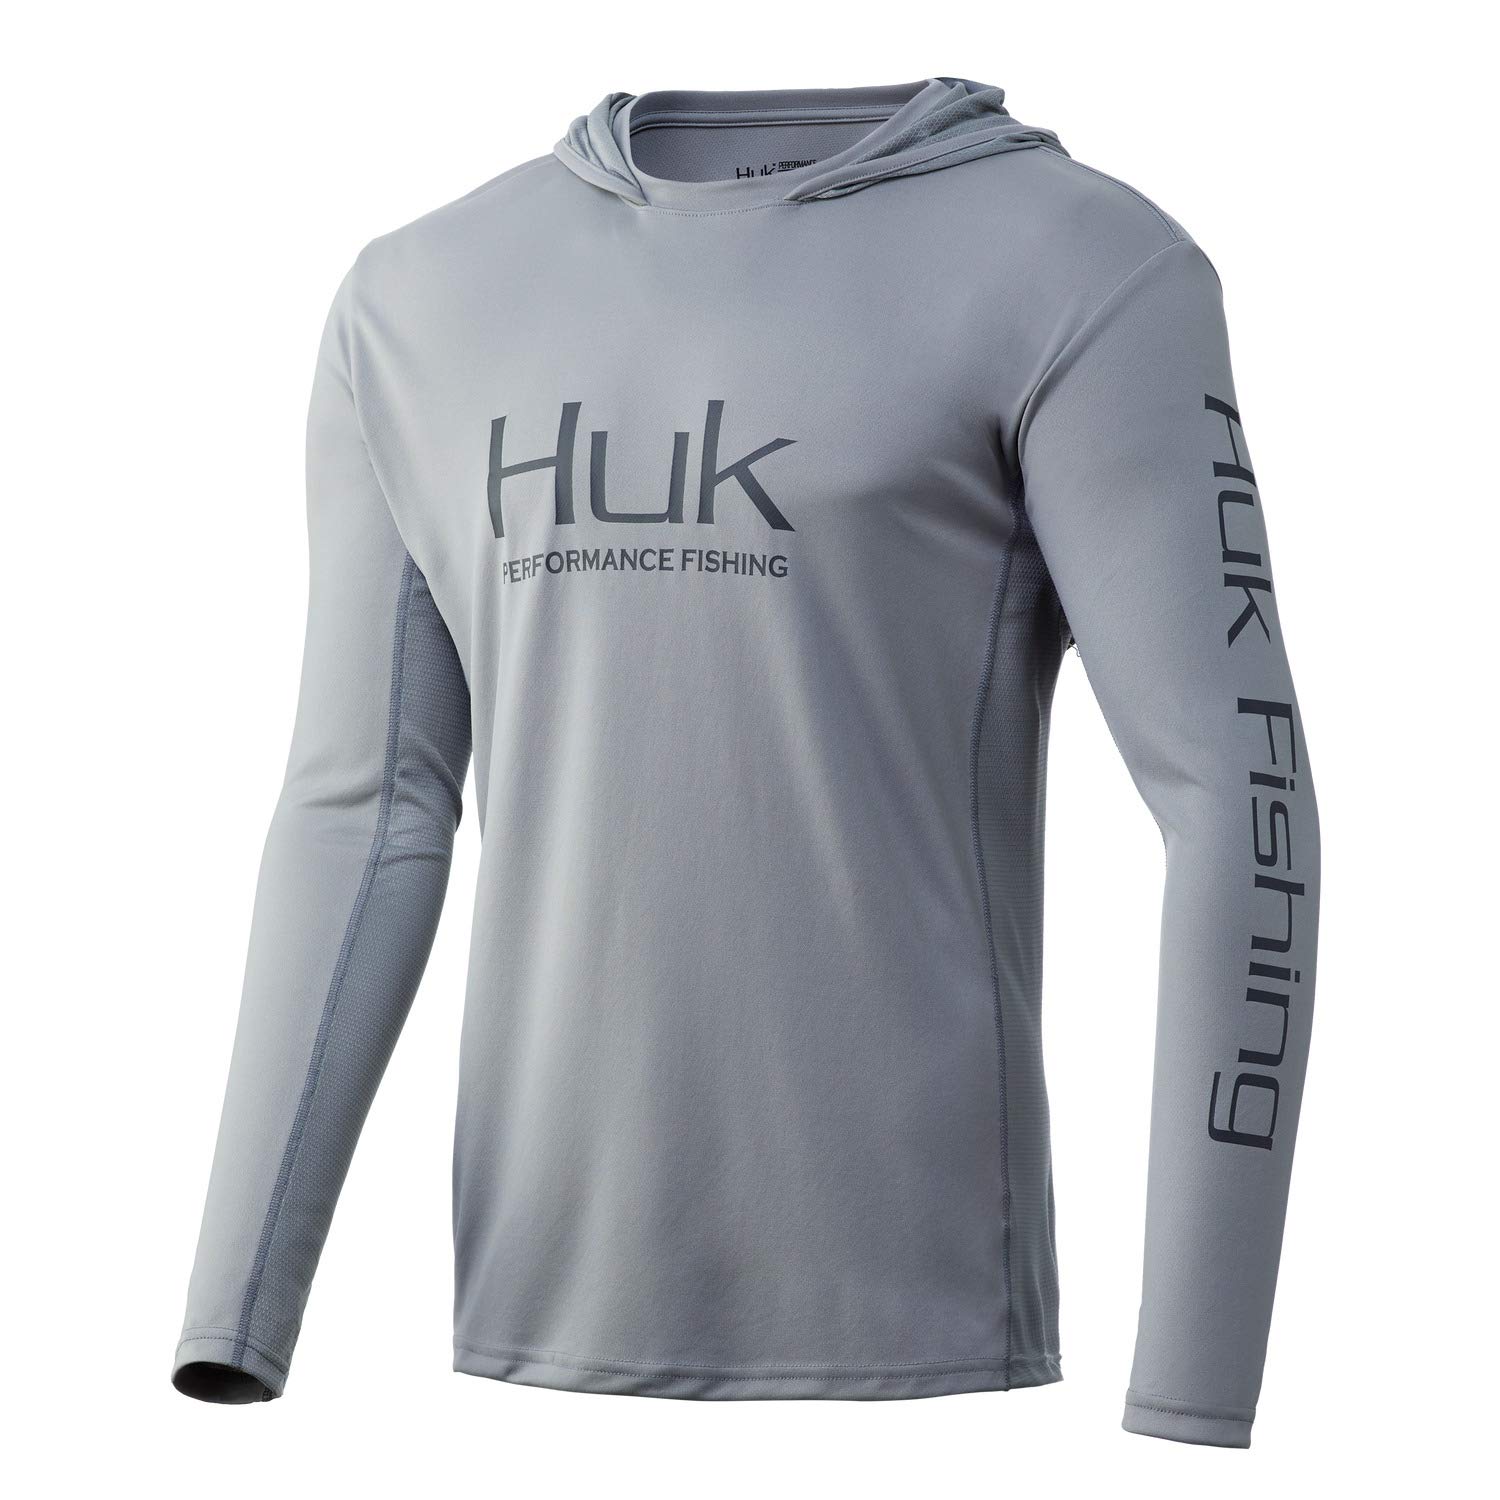 Killik Shirt mens XXXL 3XL Gray Fishing Sun Protection Outdoor